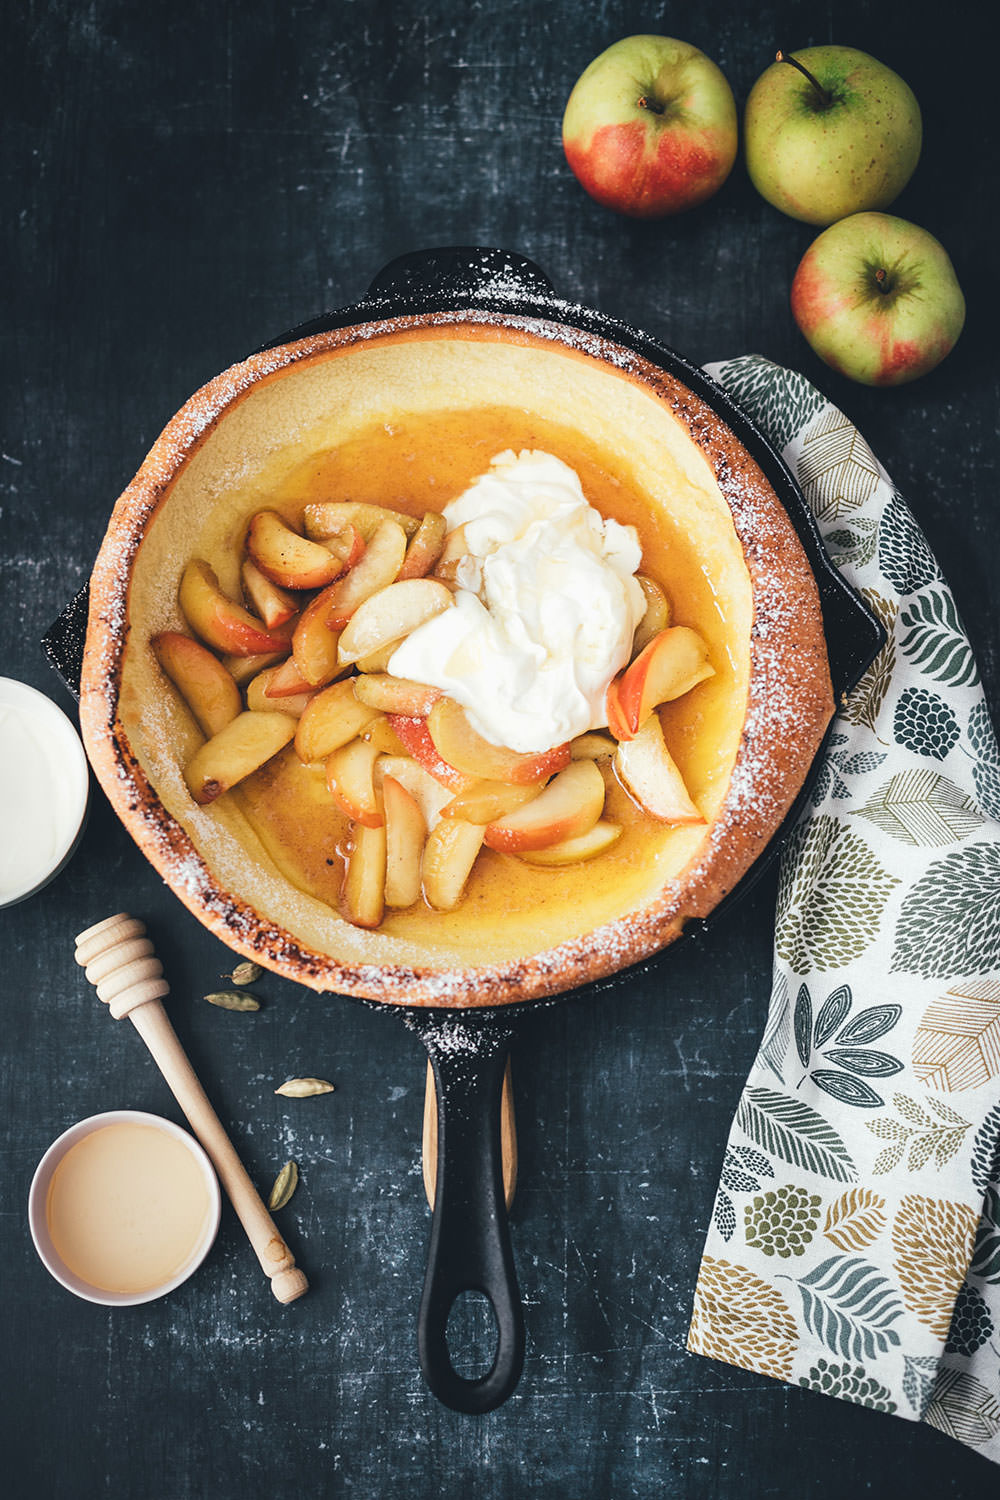 Rezept für Ofenpfannkuchen zum Sonntagsfrühstück | Dutch Baby Pancake mit Honig-Äpfeln und Crème fraîche | moeyskitchen.com #ofenpfannkuchen #dutchbaby #dutchbabypancake #pfannkuchen #pancake #frühstück #sonntagsfrühstück #foodblog #rezept #backen #äpfel #herbst